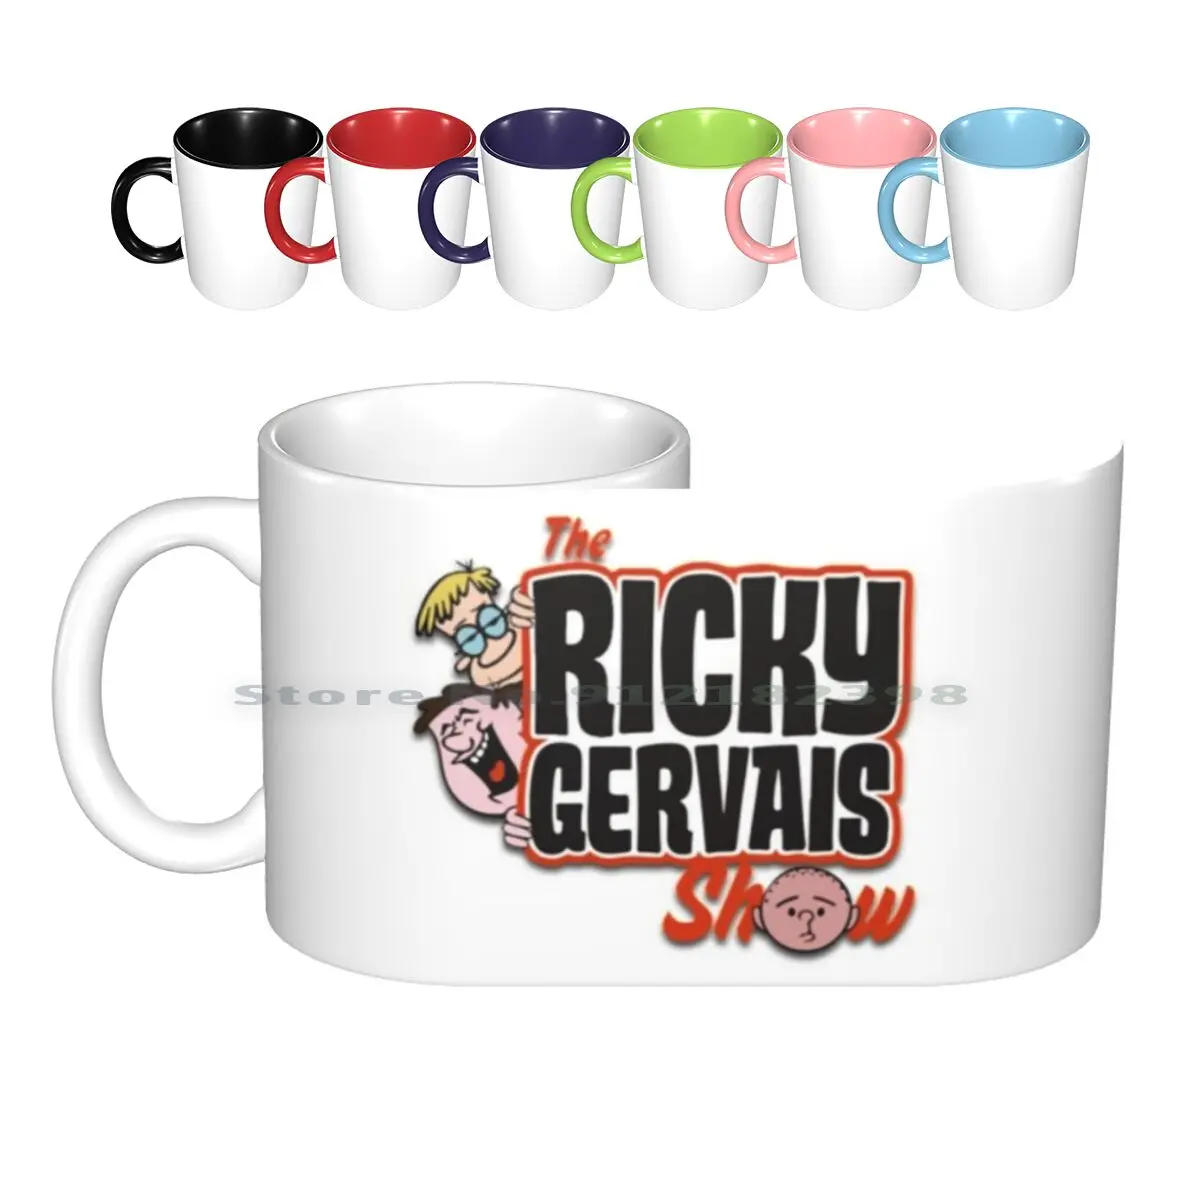 

The Ricky Gervais Show Retro Logo Xfm Ceramic Mugs Coffee Cups Milk Tea Mug Ricky Gervais Pilkington Head Face Orange No Ears